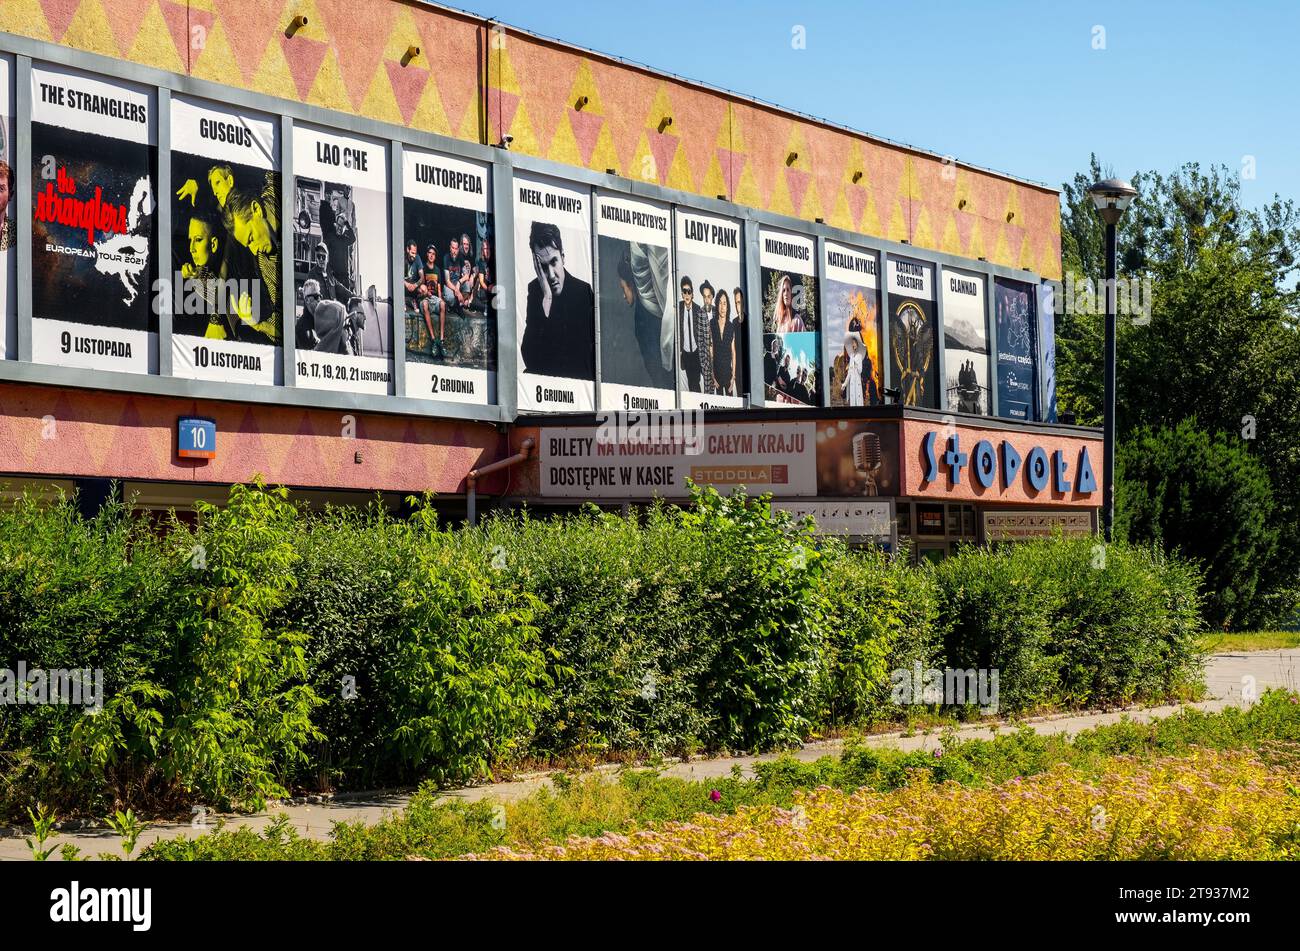 Warschau, Polen - 22. Juni 2021: Stodola Barn legendärer Vintage Studentenmusikclub und Konzerthalle in der Batorego Straße im Bezirk Mokotow in Warschau Stockfoto